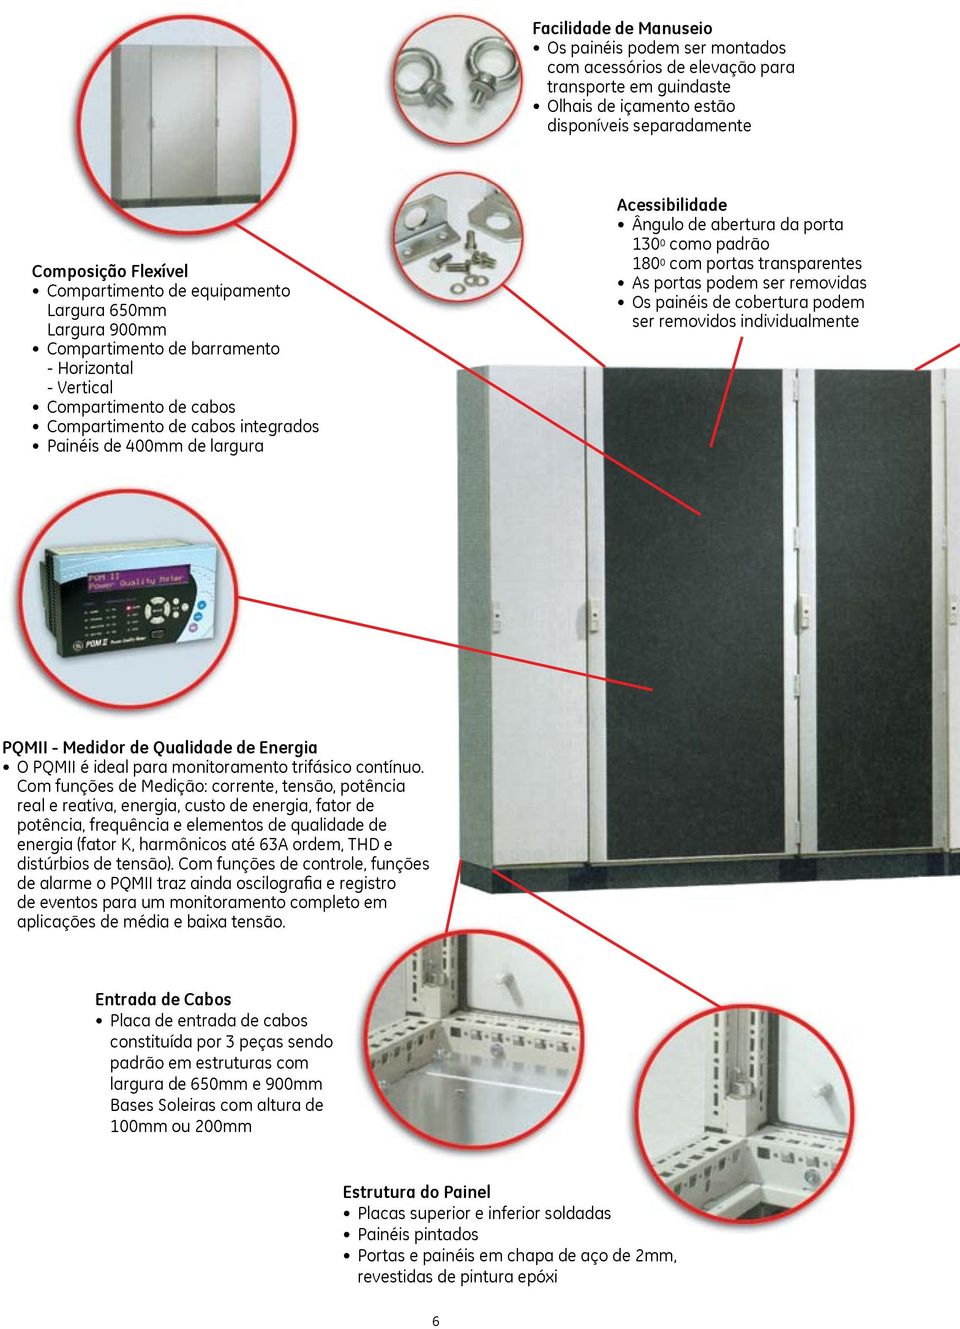 abertura da porta 0 0 como padrão 0 0 com portas transparentes As portas podem ser removidas Os painéis de cobertura podem ser removidos individualmente PQMII - Medidor de Qualidade de Energia O